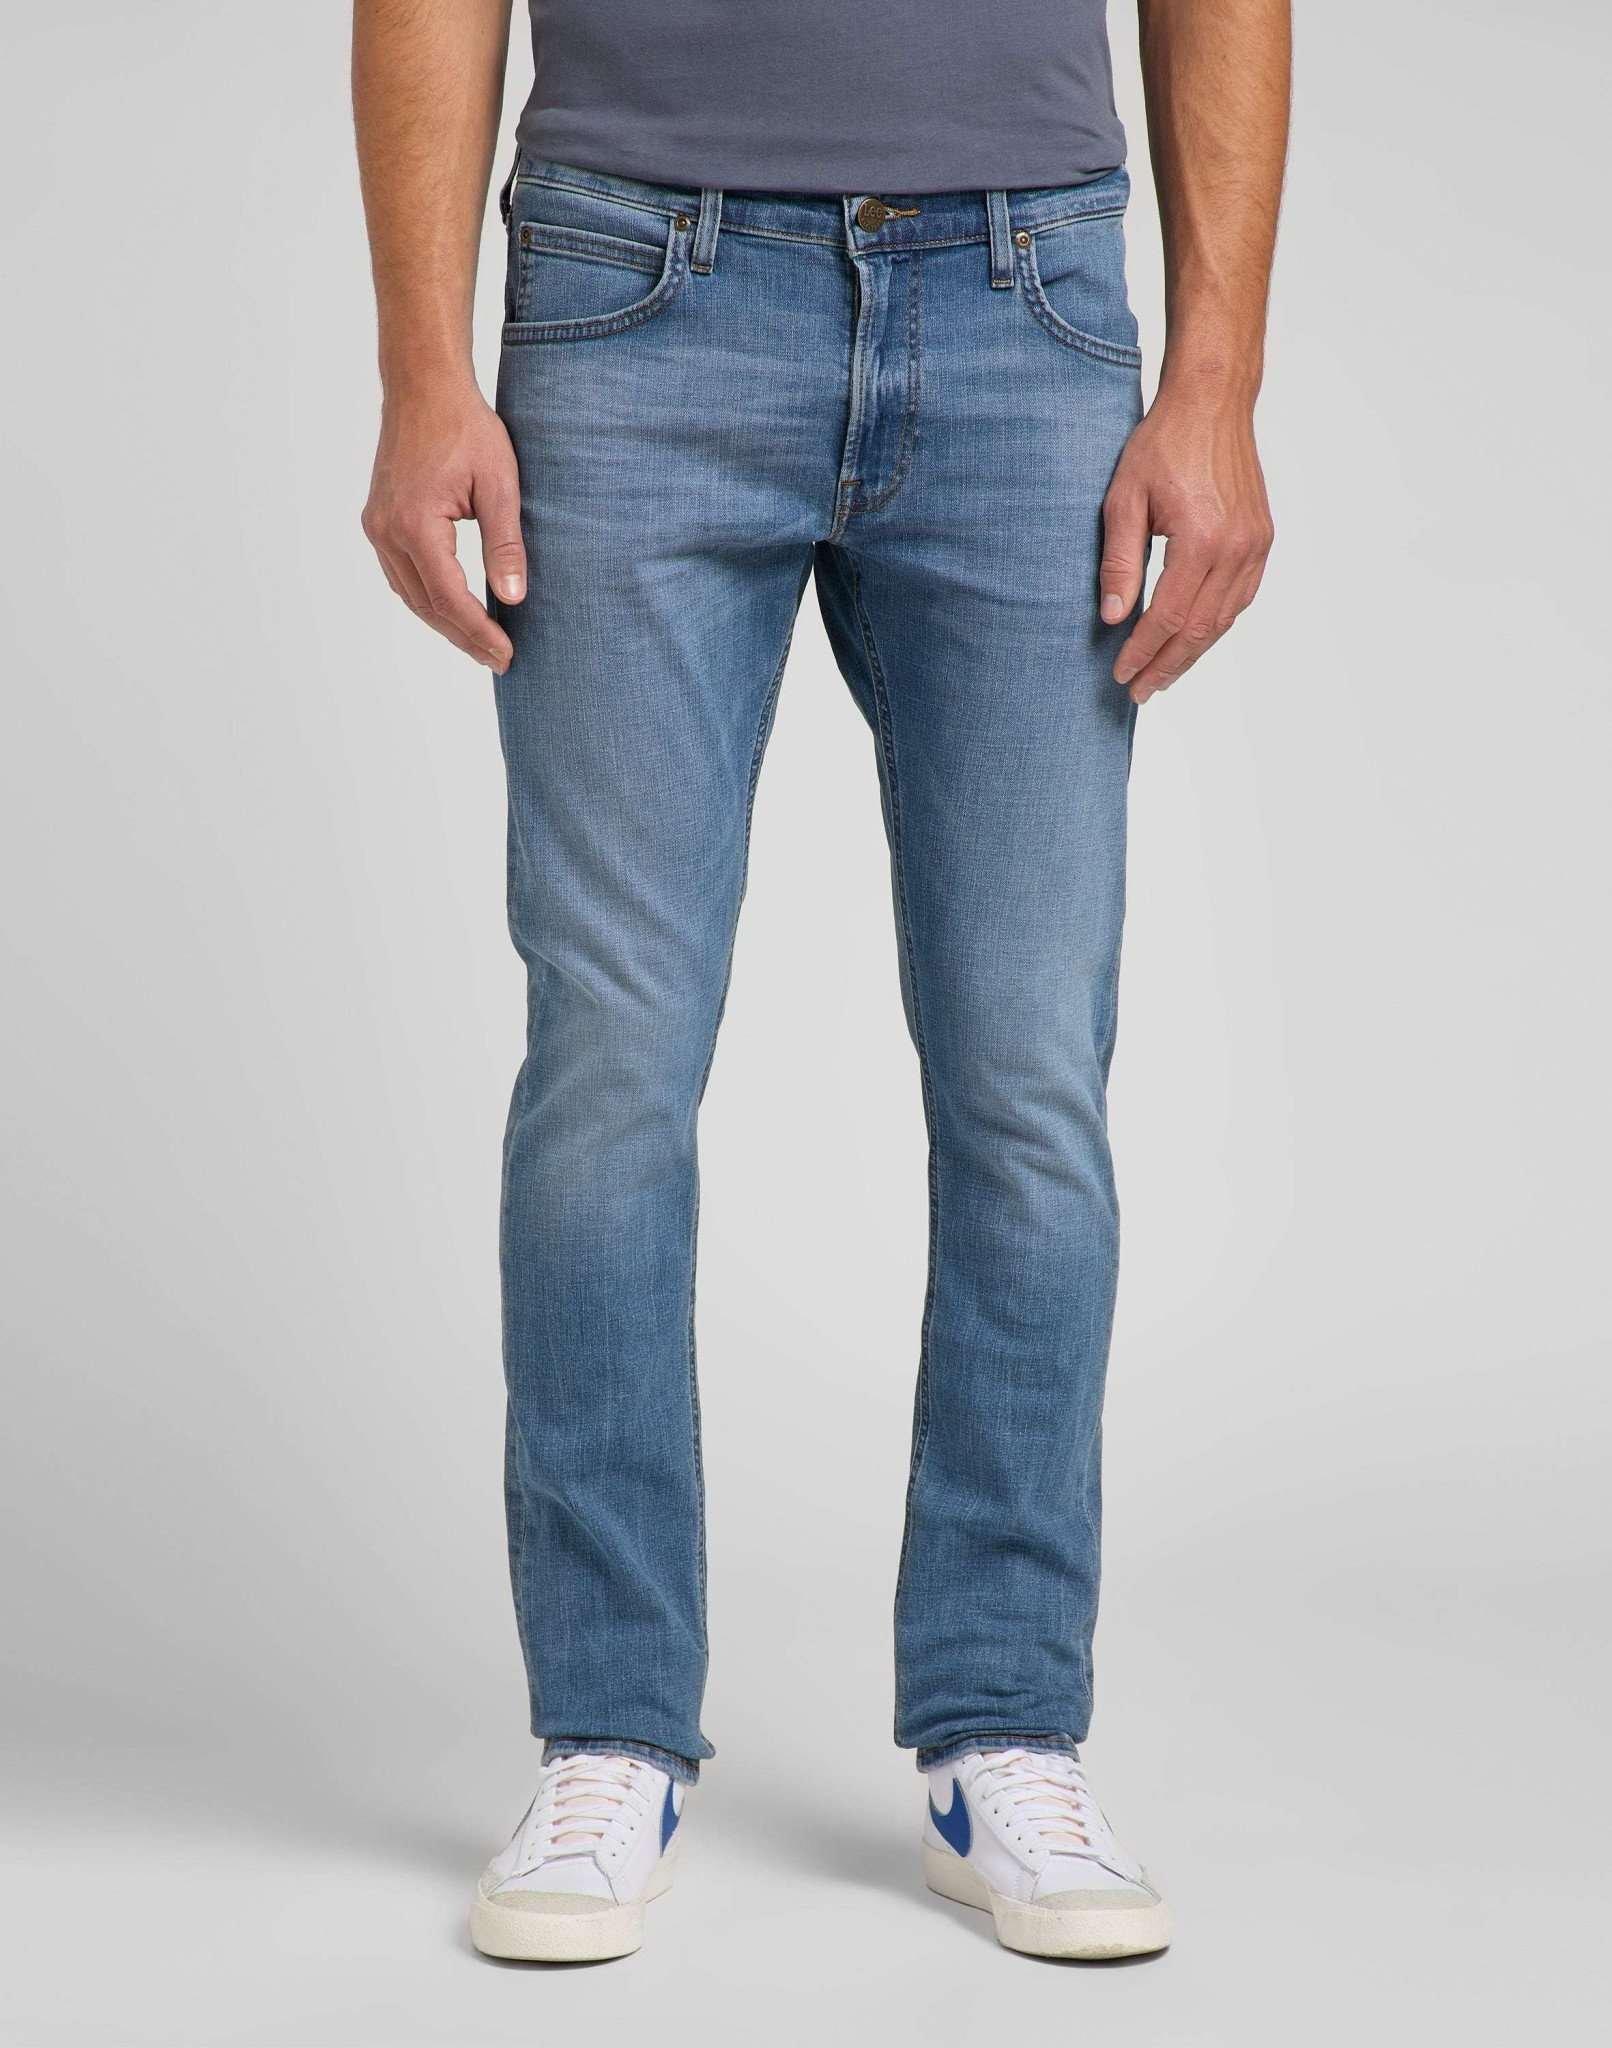 Jeans Slim Fit Luke Herren Blau Denim L30/W34 von Lee